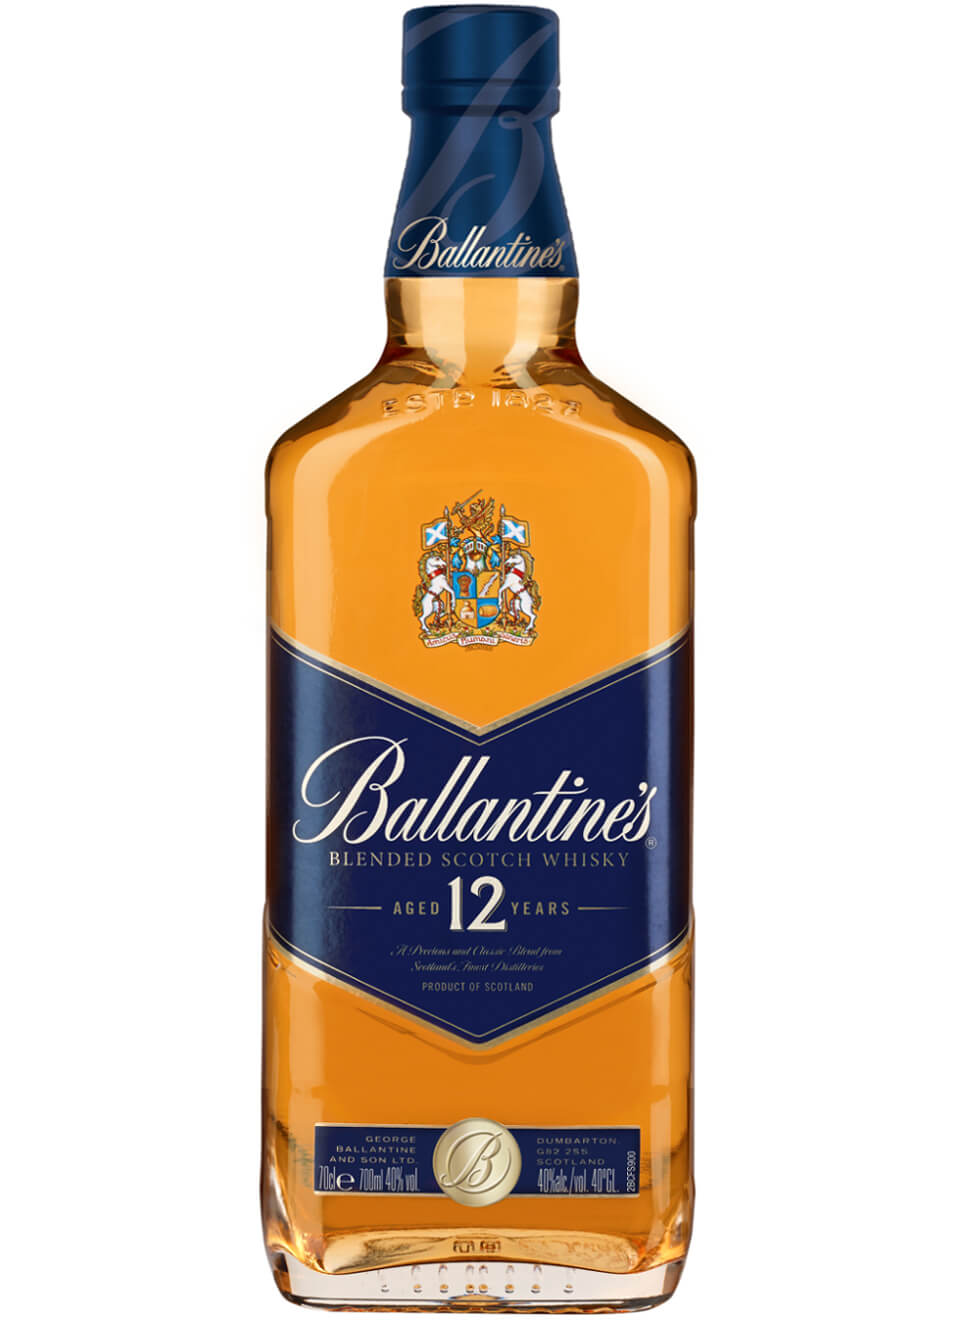 Баллантинес. Виски Blended Scotch Whisky Баллантайнс. Балантайн скотч виски шотландский. Виски "Ballantine's" 12 years old. Ballantines 12 years Whiskey.